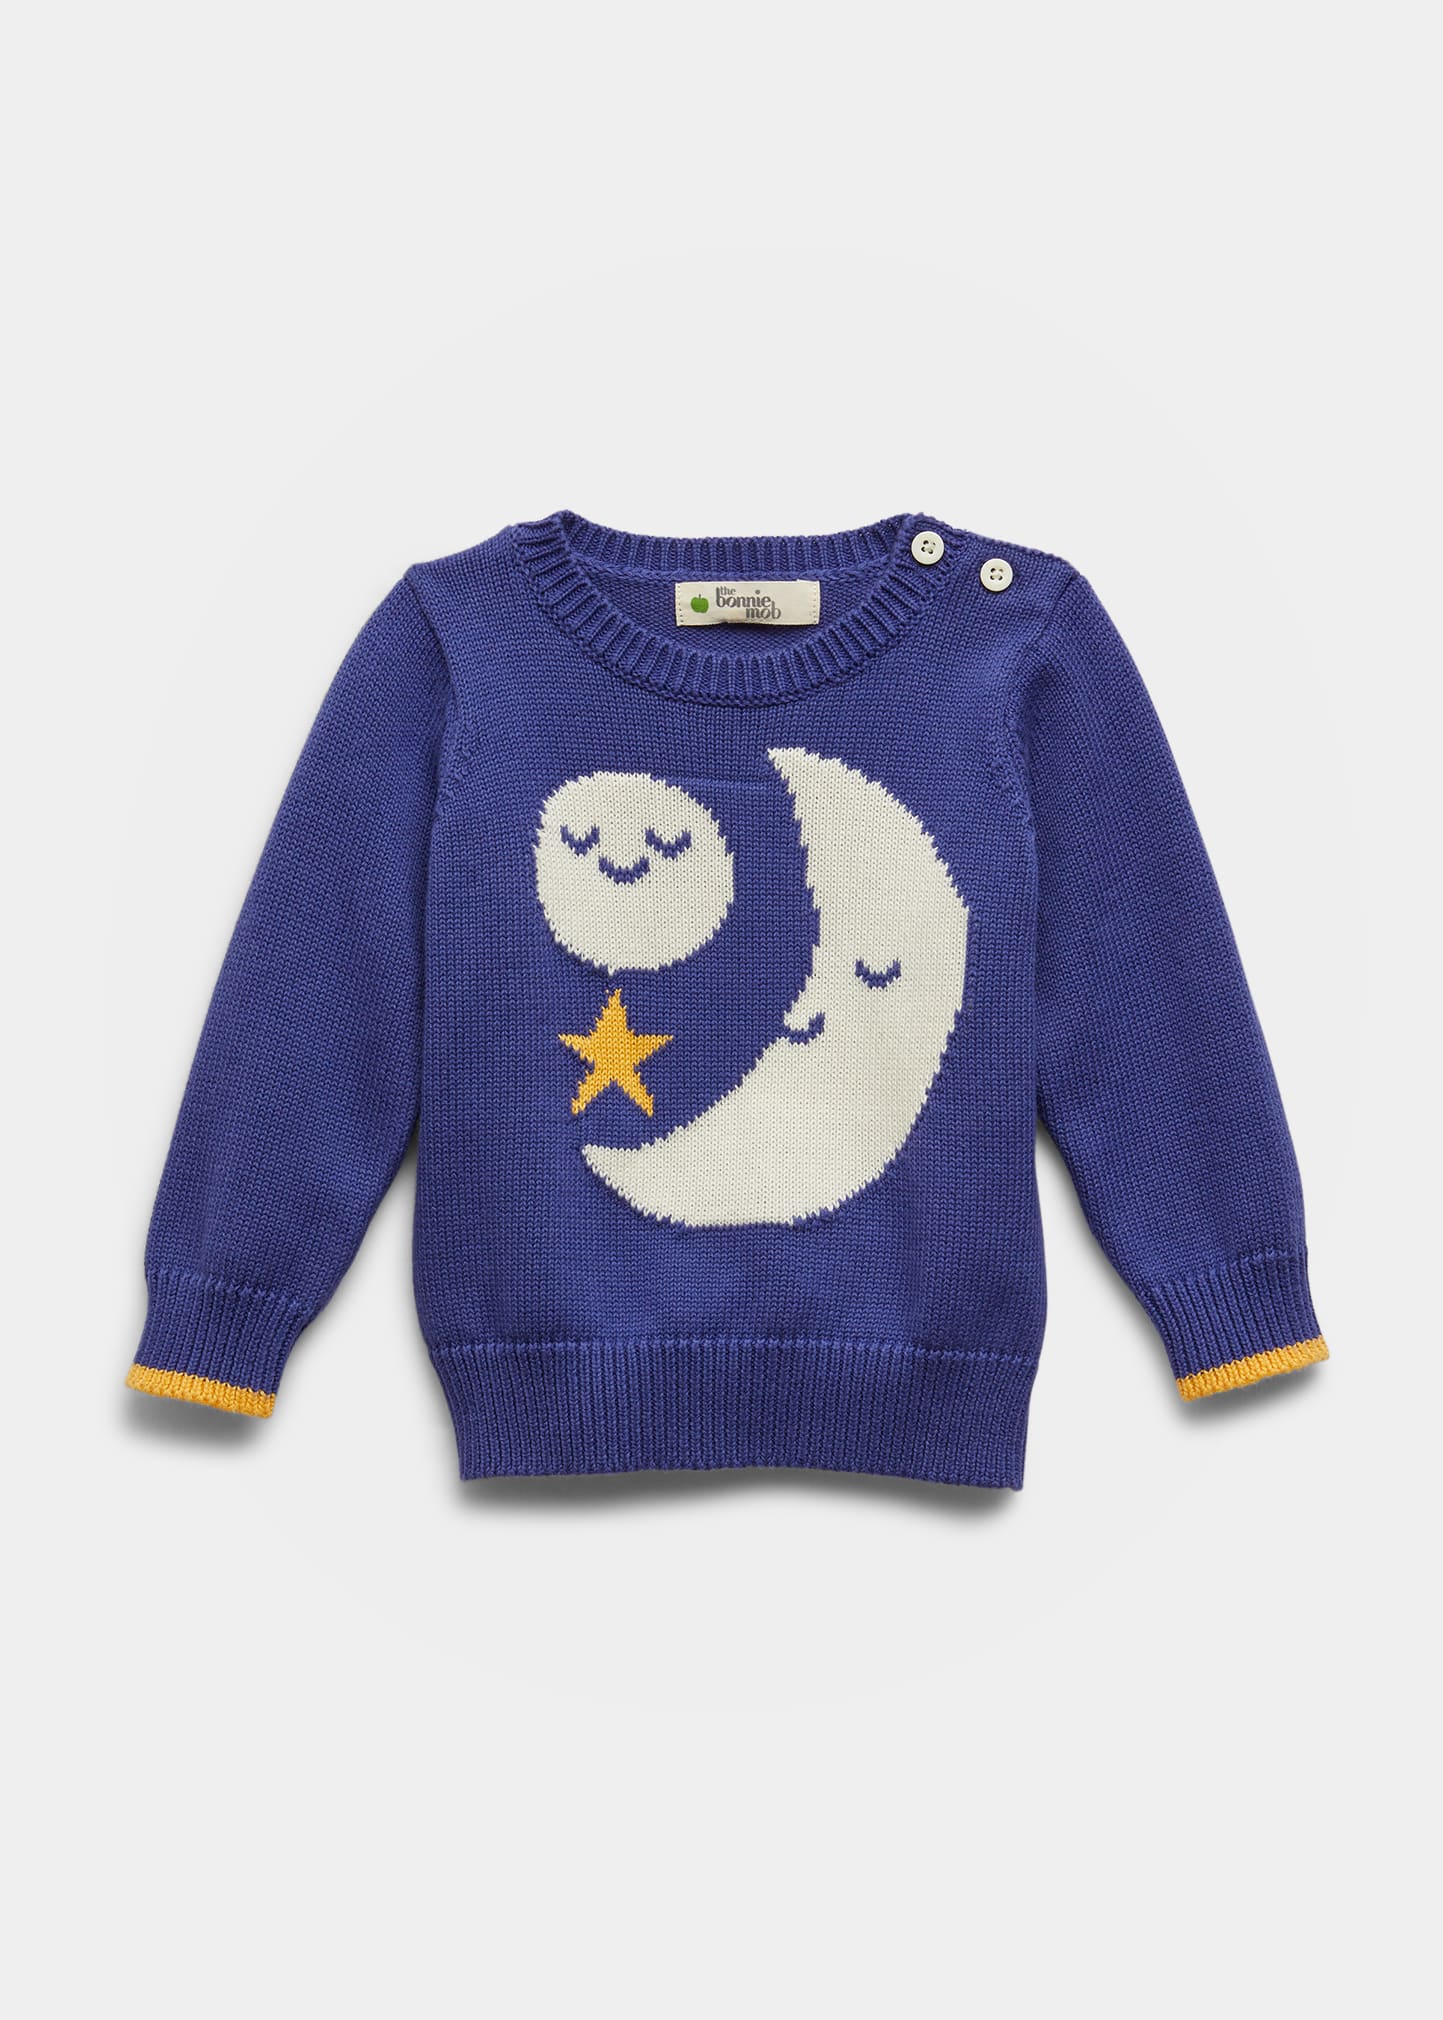 bonniemob Girl's Moon Knit Sweater, Size Newborn-24M